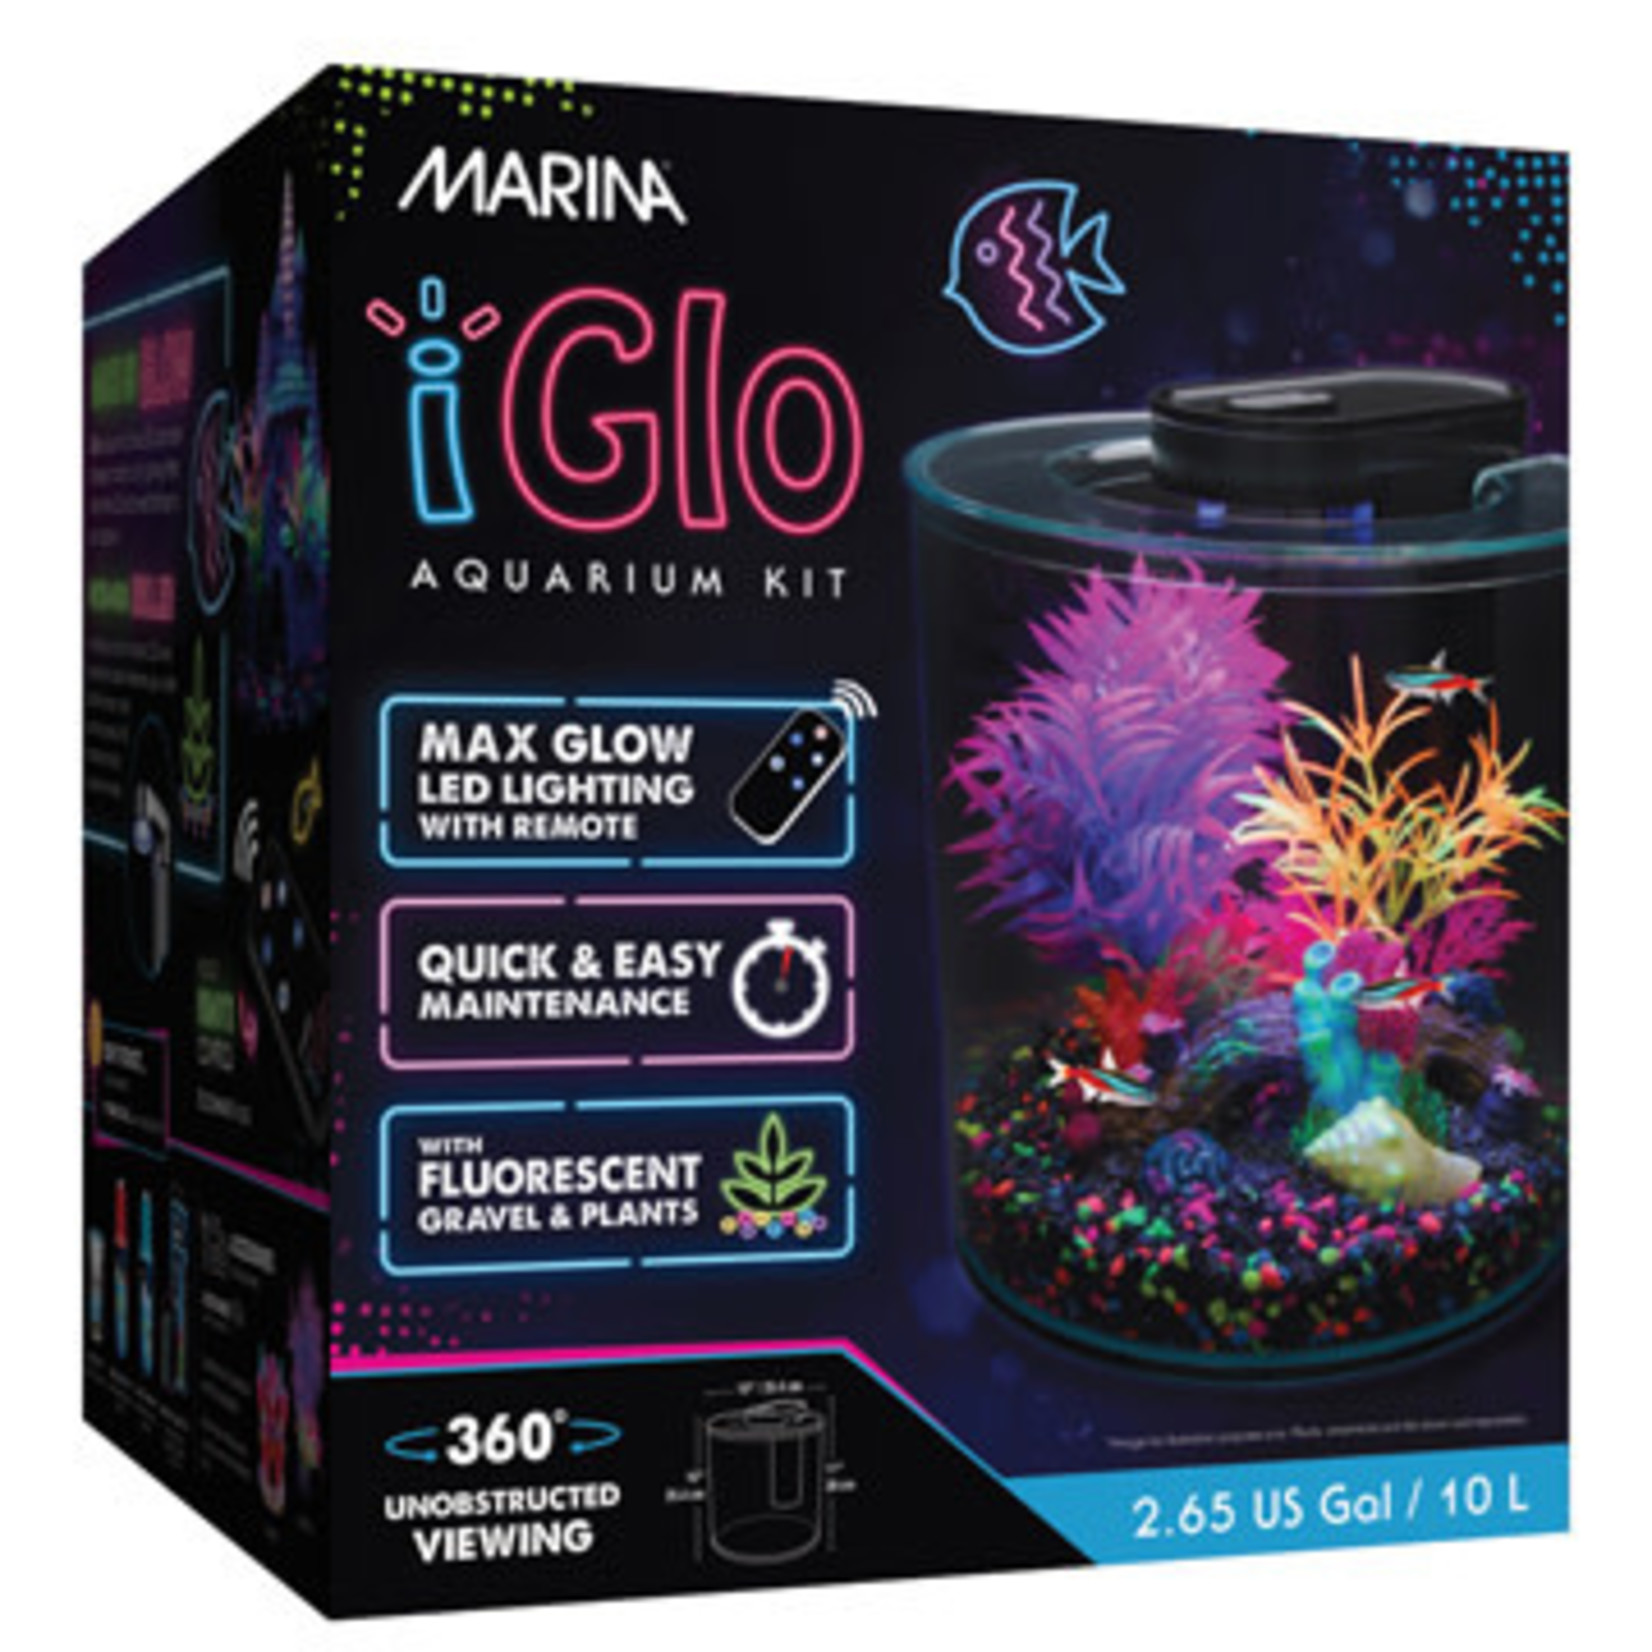 MARINA Marina iGlo Aquarium Kit - 10 L (2.65 US gal)